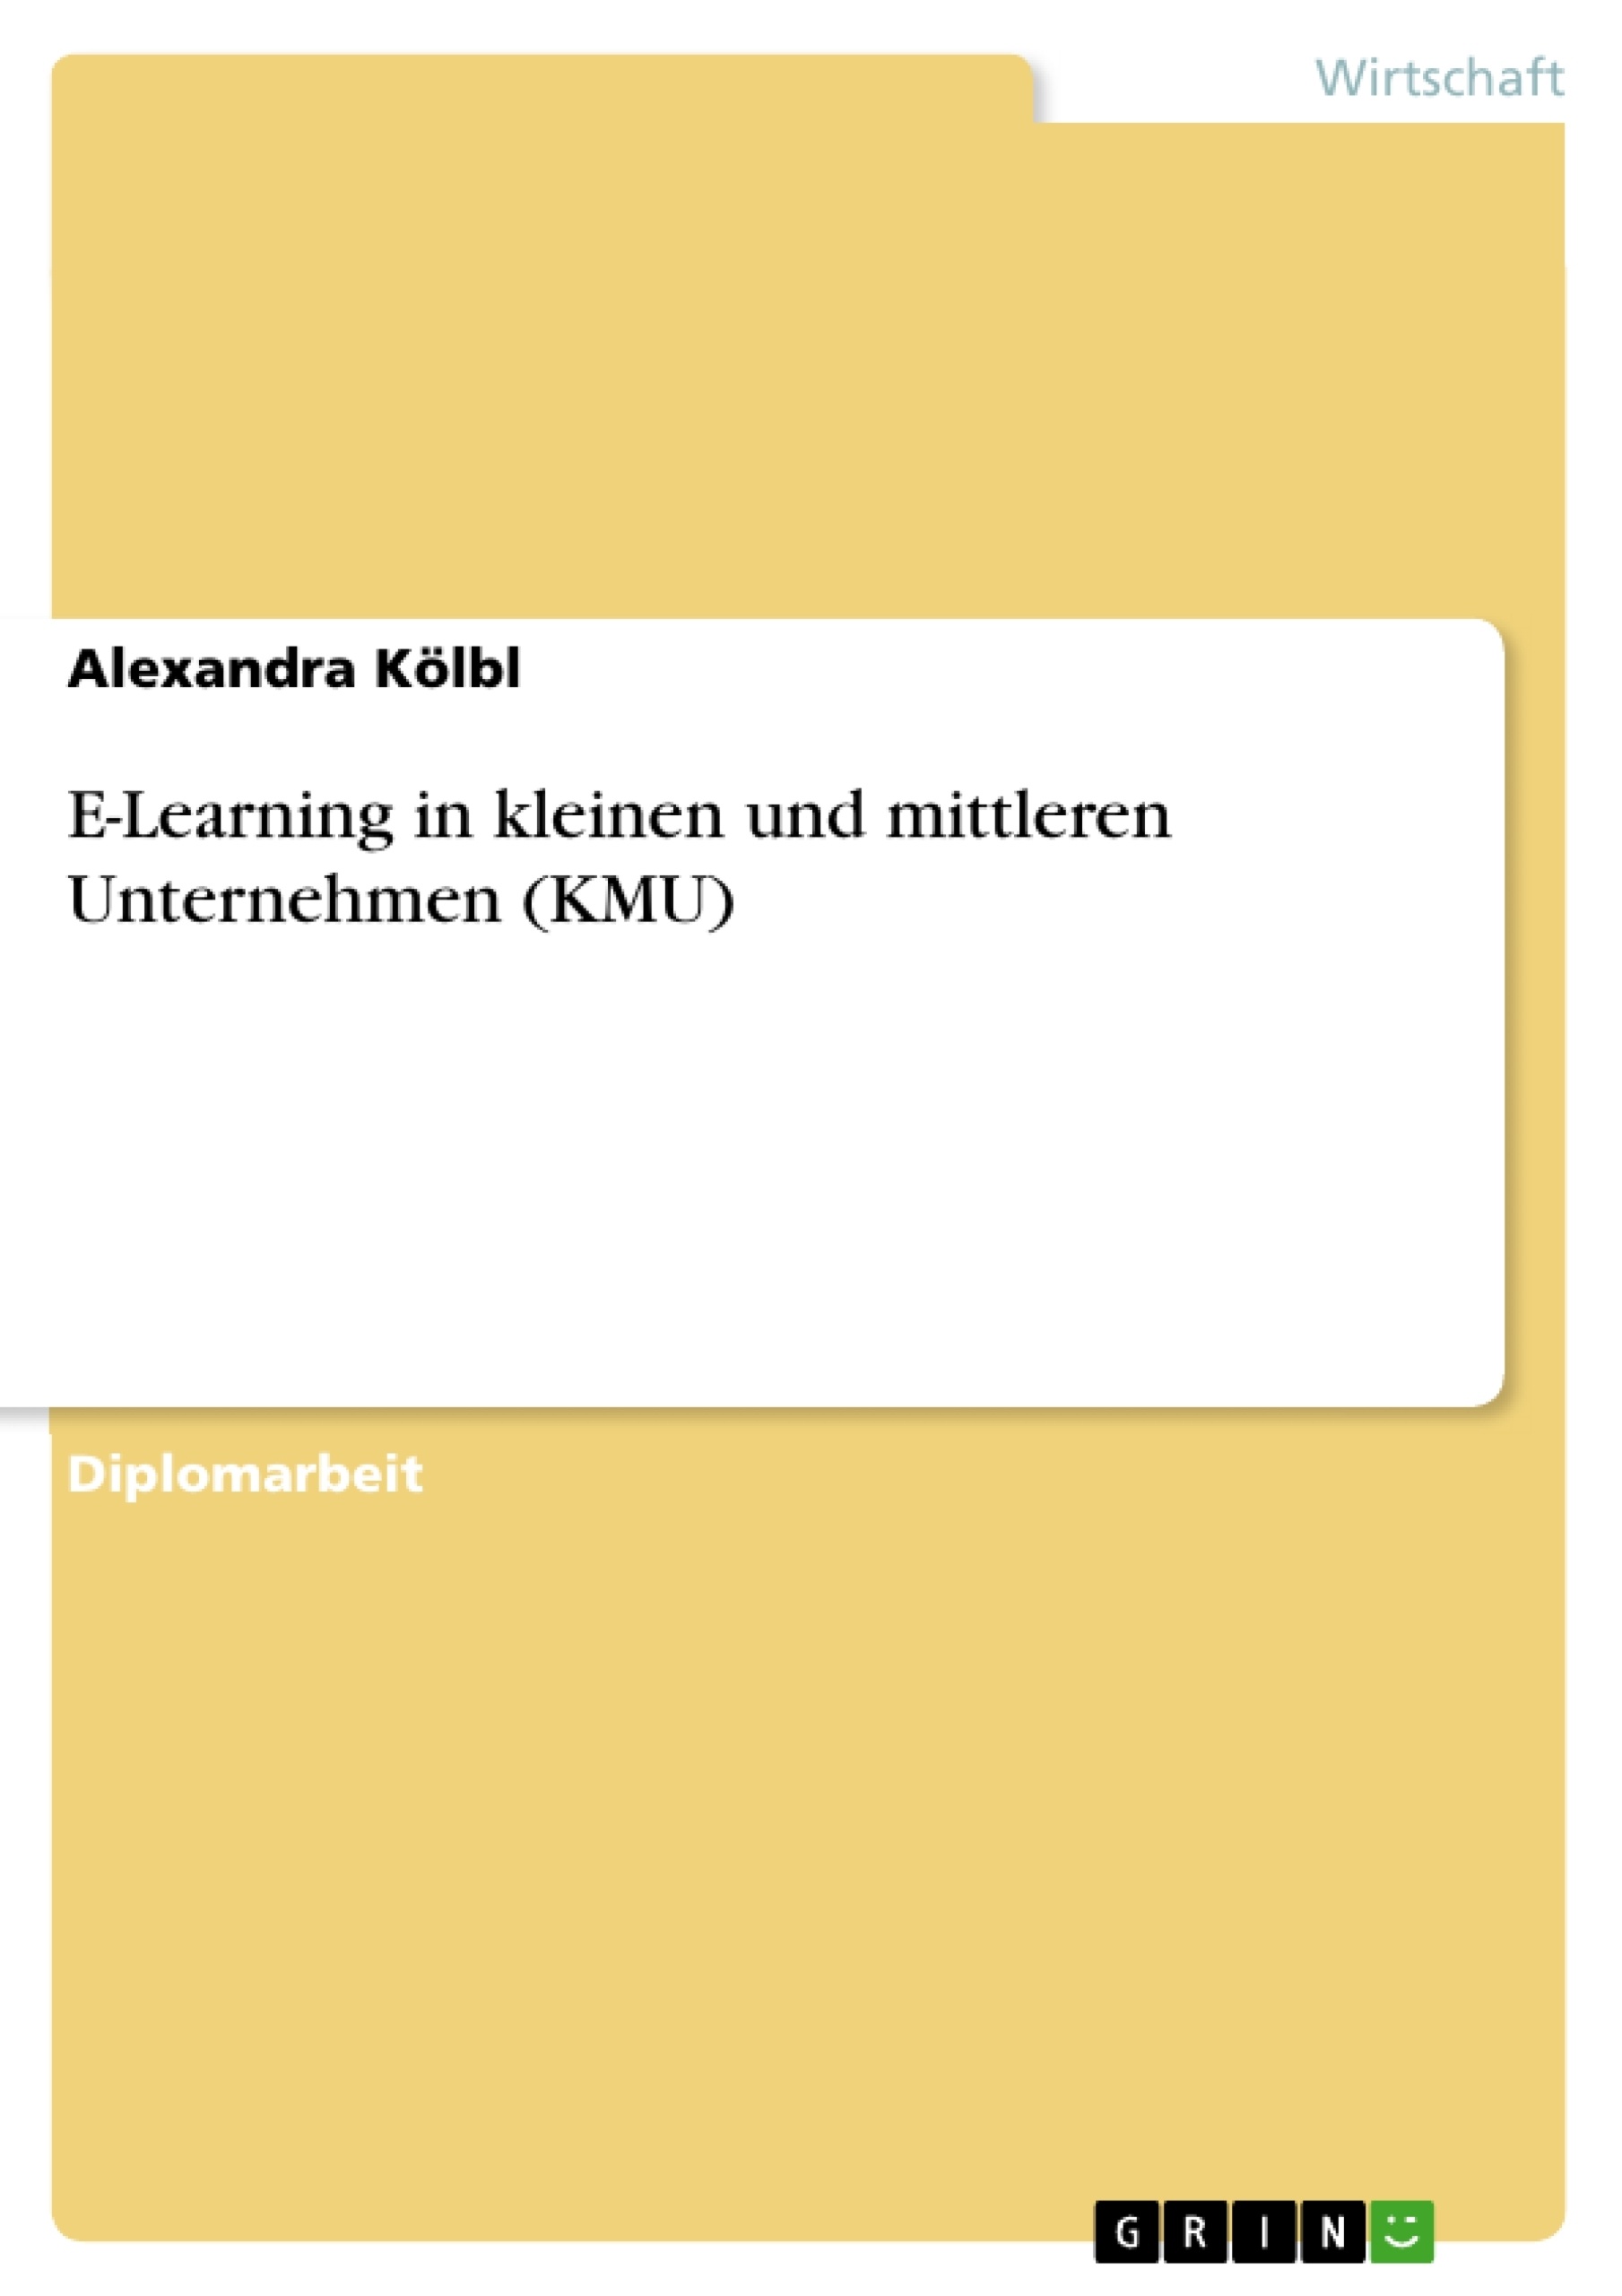 Titre: E-Learning in kleinen und mittleren Unternehmen (KMU)